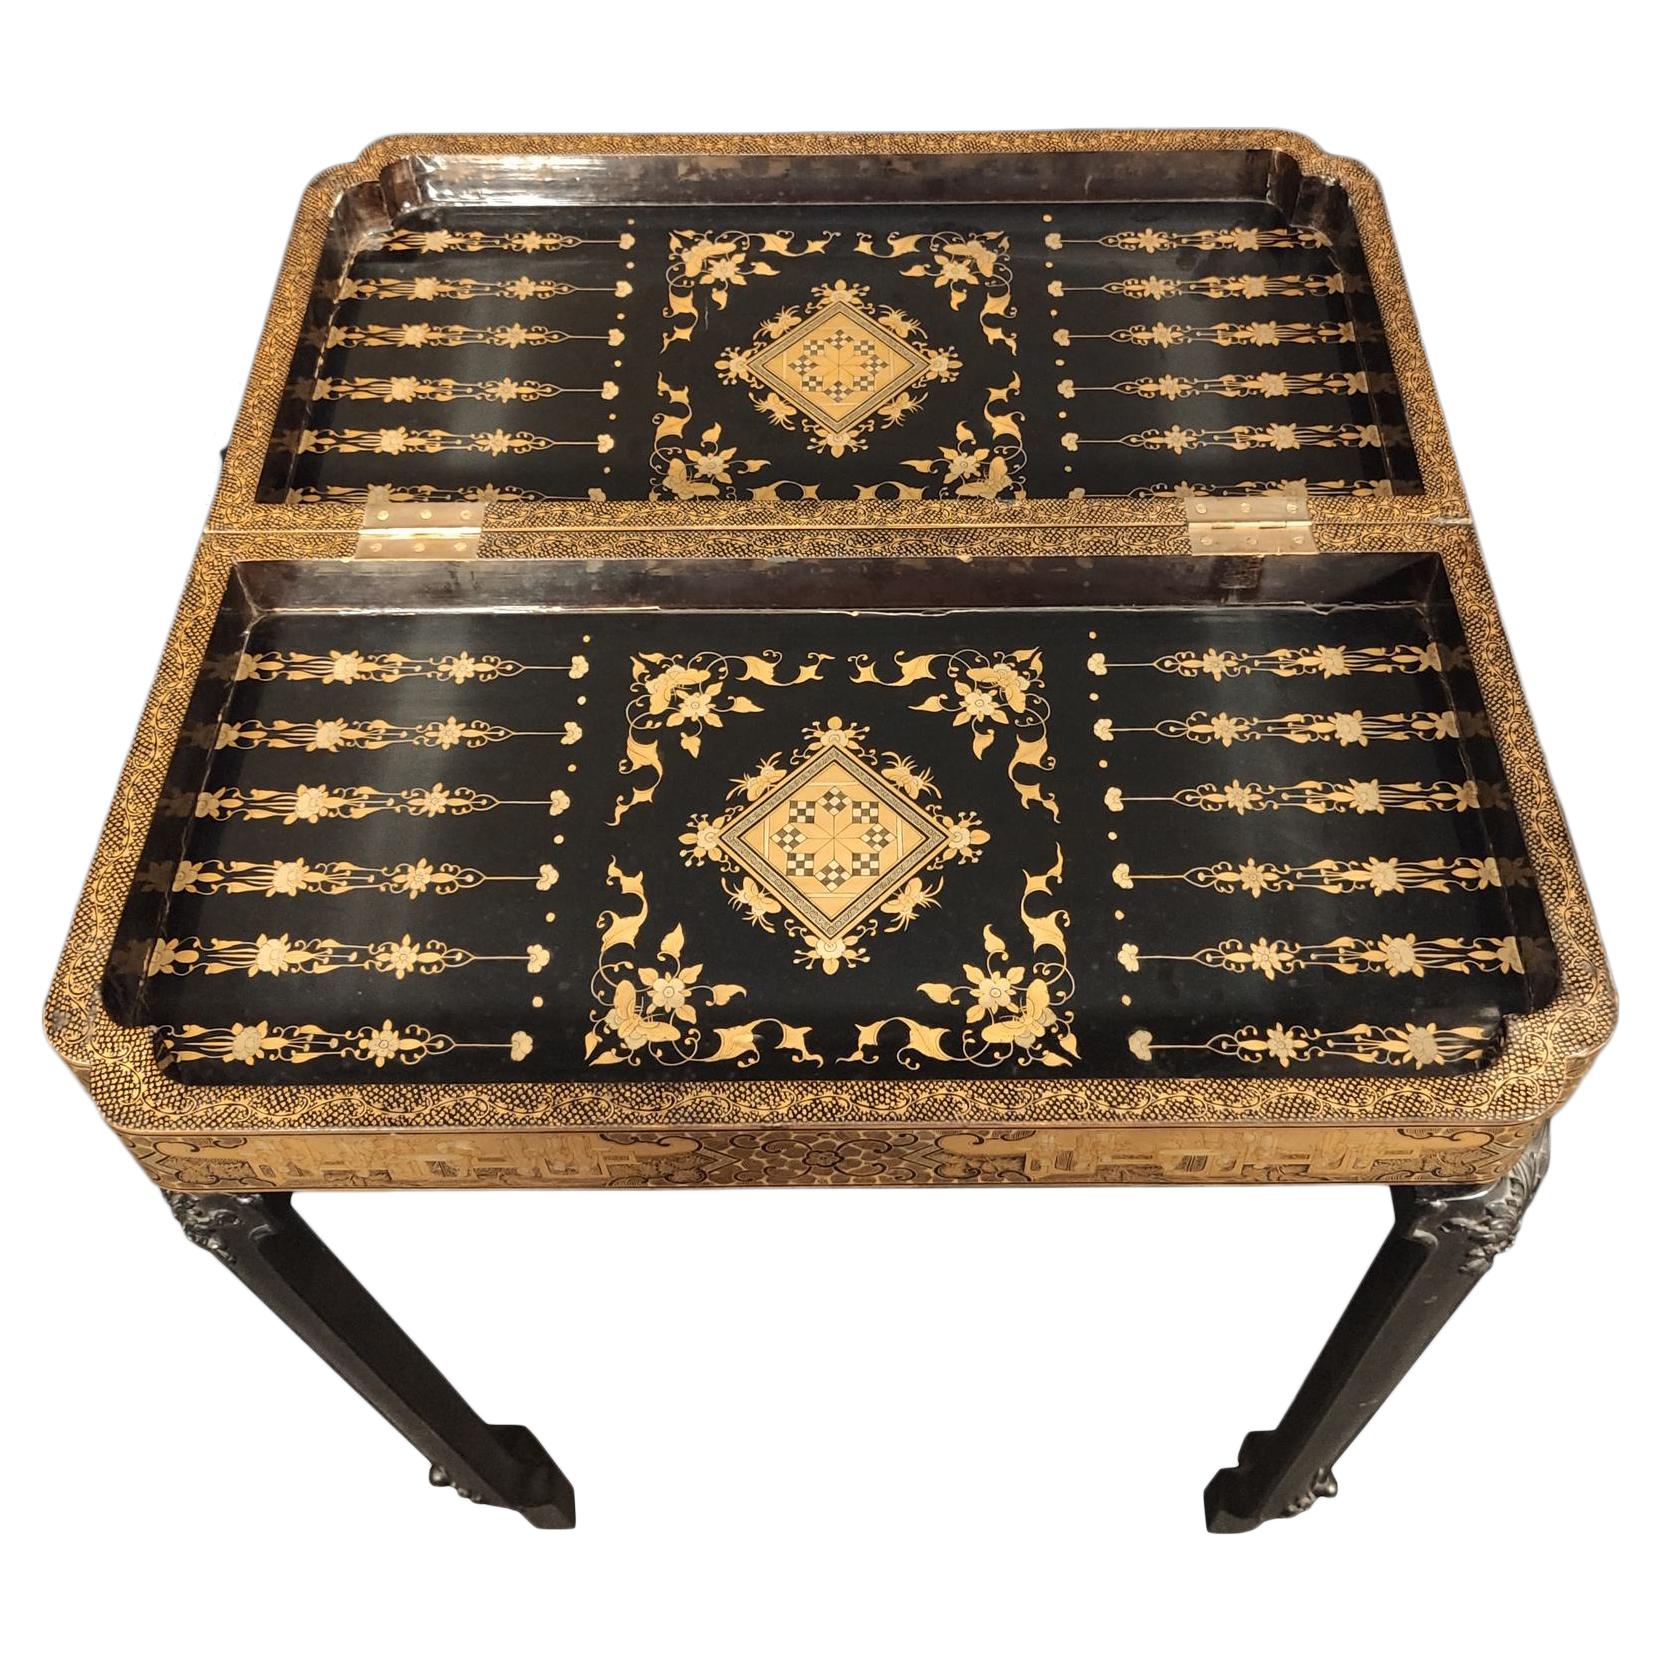 Chinesisches, lackiertes Schachbrett aus Perlmutt aus dem 19. Jahrhundert mit einem Tisch, Chinesischer Export